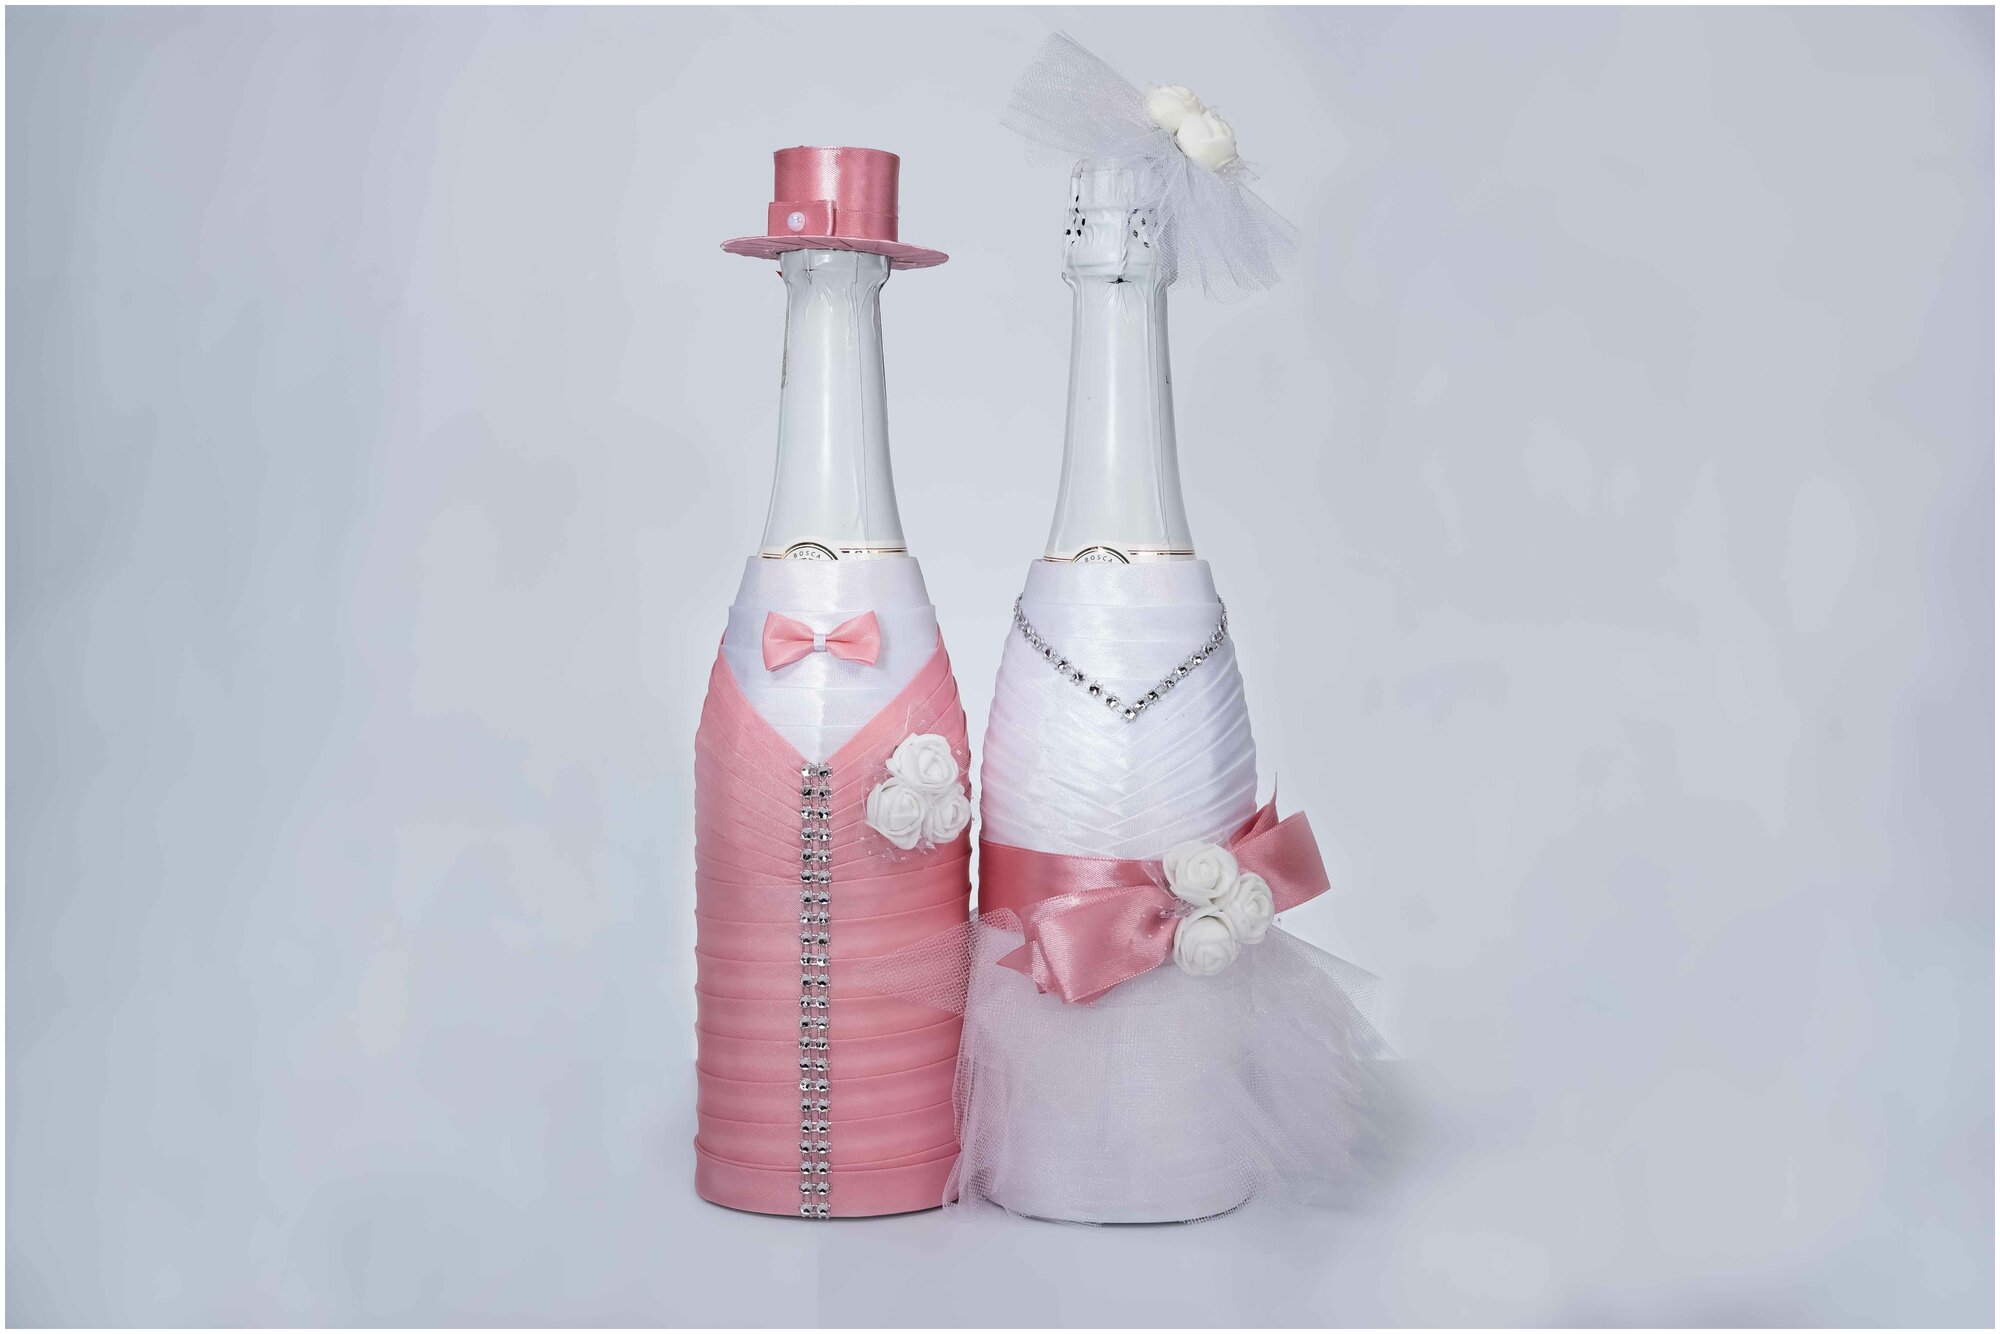 Украшение на свадебное шампанское "Шарм" цвета пыльной розы / Украшение на свадебные бутылки молодоженов